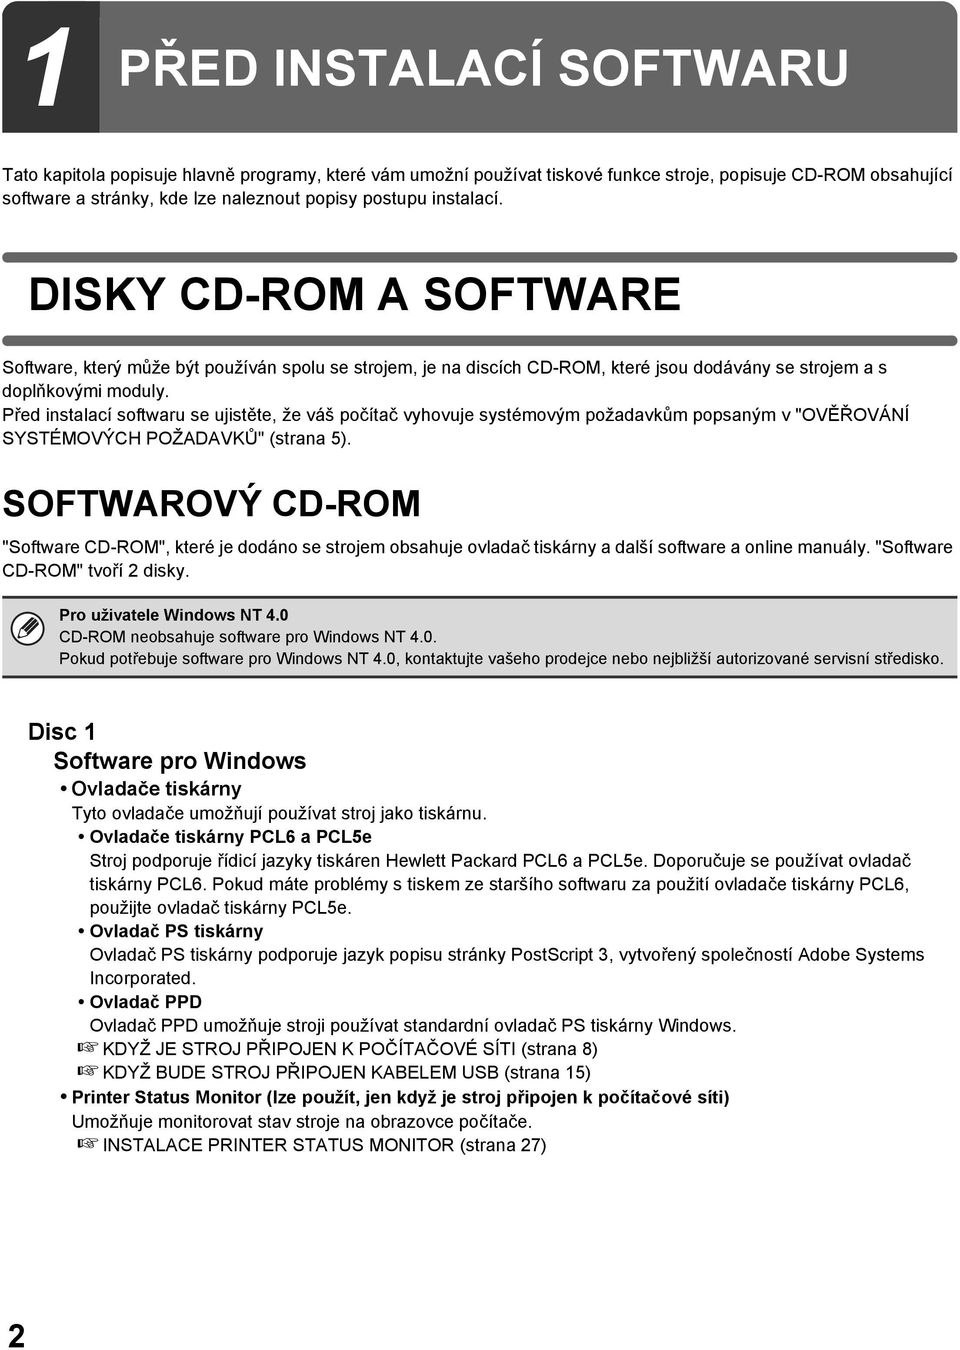 Před instalací softwaru se ujistěte, že váš počítač vyhovuje systémovým požadavkům popsaným v "OVĚŘOVÁNÍ SYSTÉMOVÝCH POŽADAVKŮ" (strana 5).